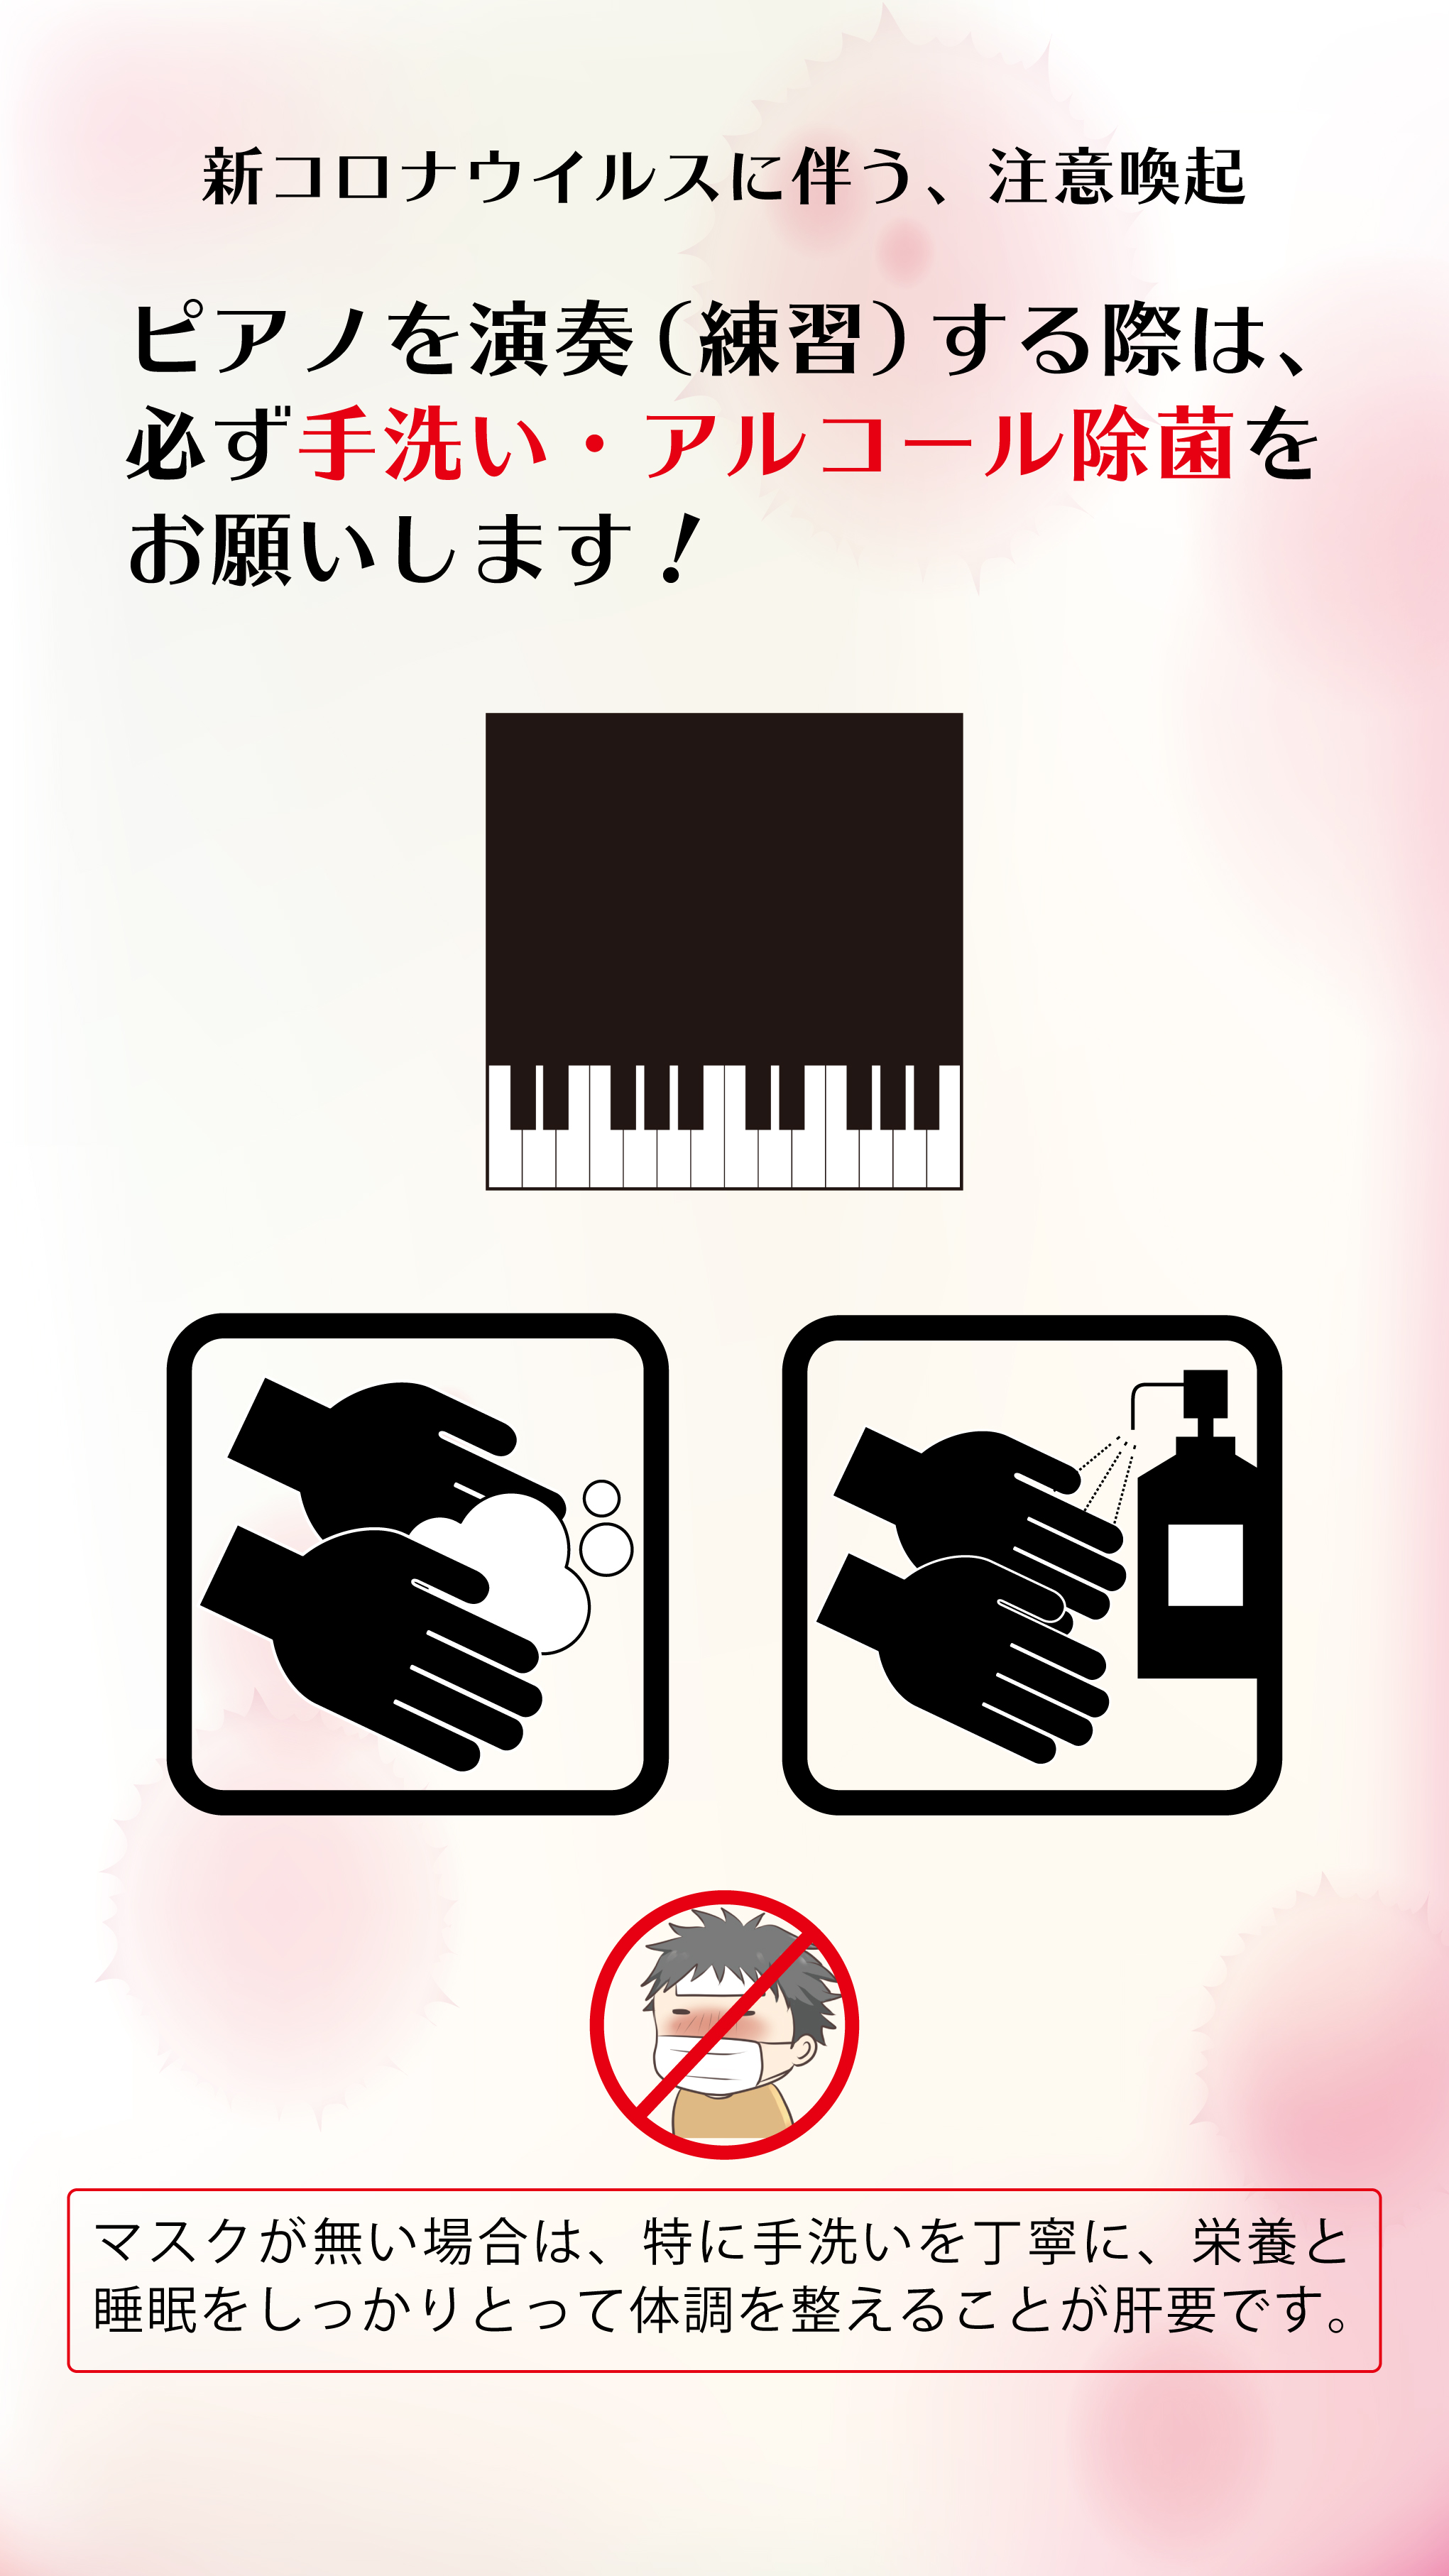 6 1 月 更新 新型コロナウイルス感染症対策につきまして 東京の音楽学校 音楽専門学校 国立音楽院 くにたちおんがくいん